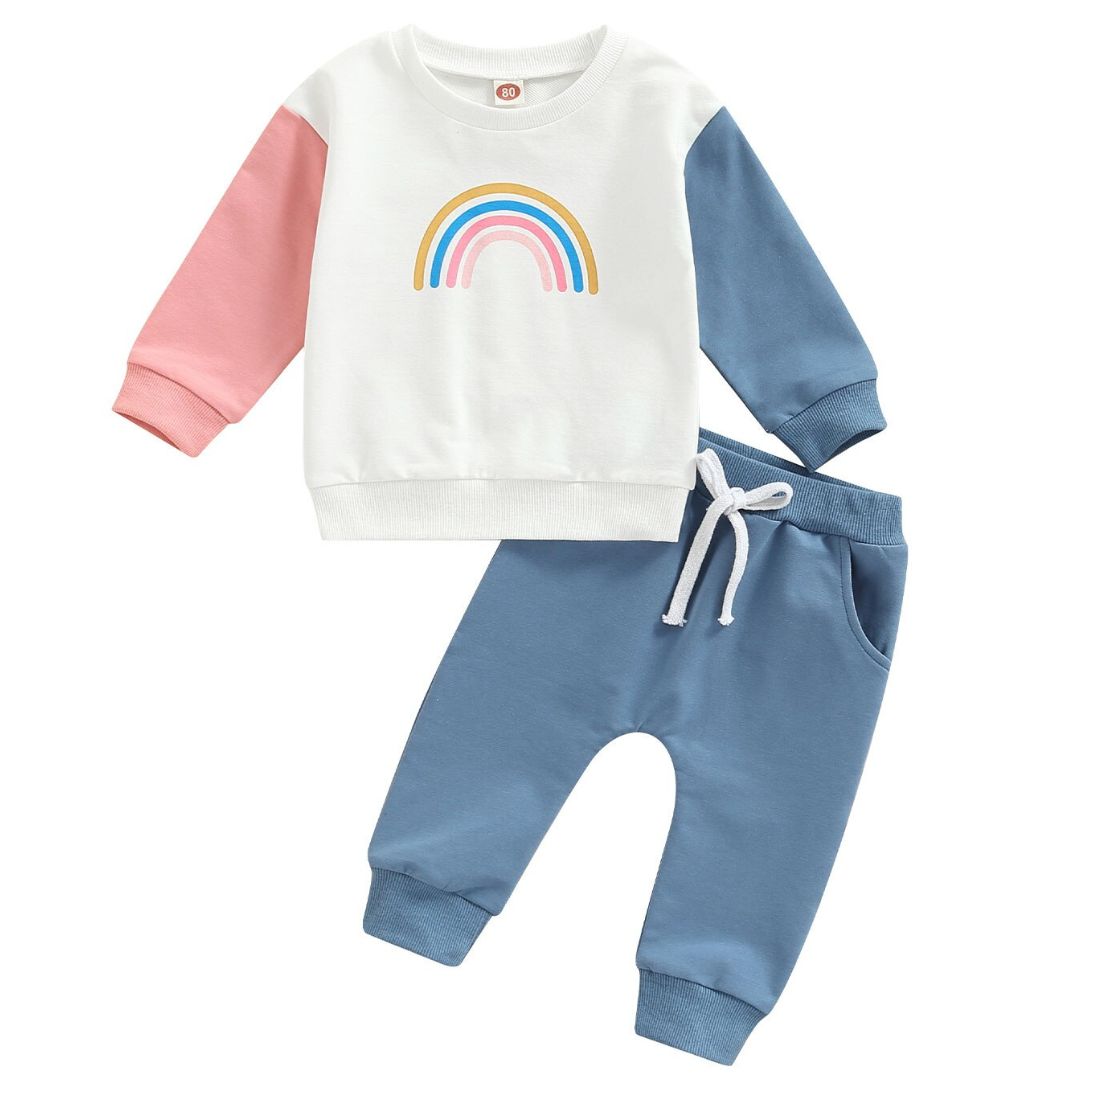 Rainbow Sweaty Baby Girl Clothing Set